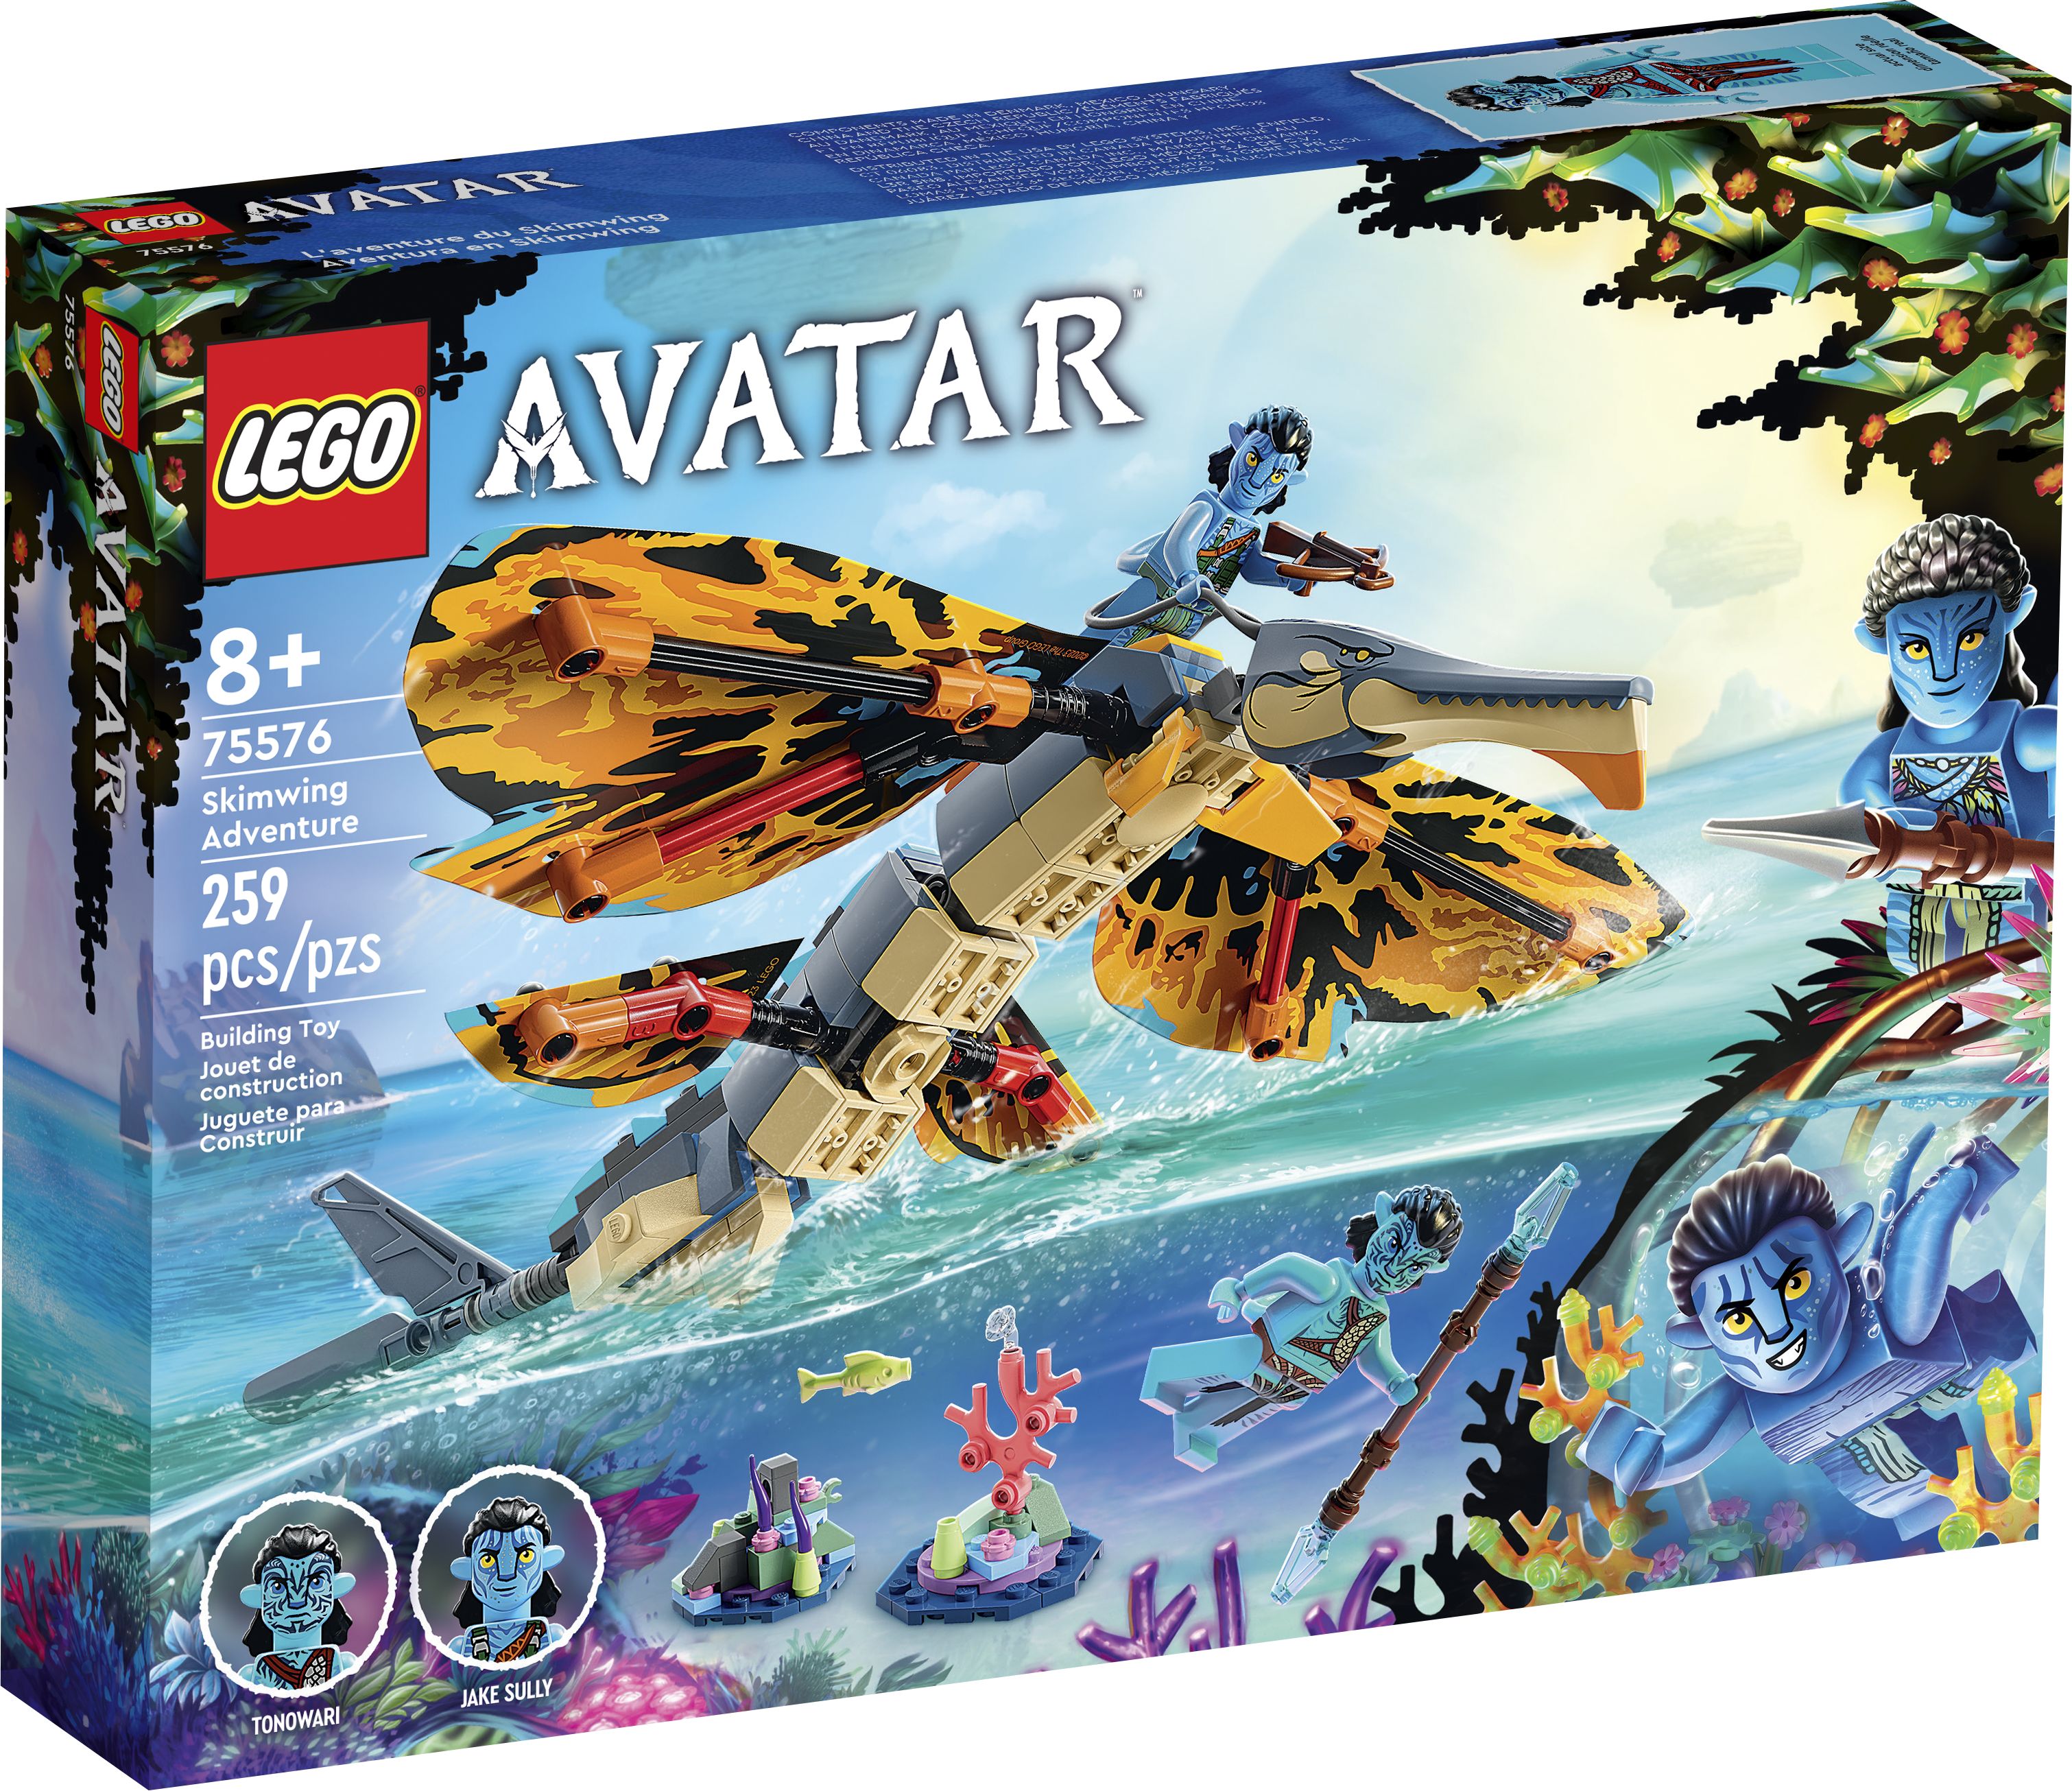 LEGO Avatar 75576 Skimwing Abenteuer LEGO_75576_Box1_v39.jpg